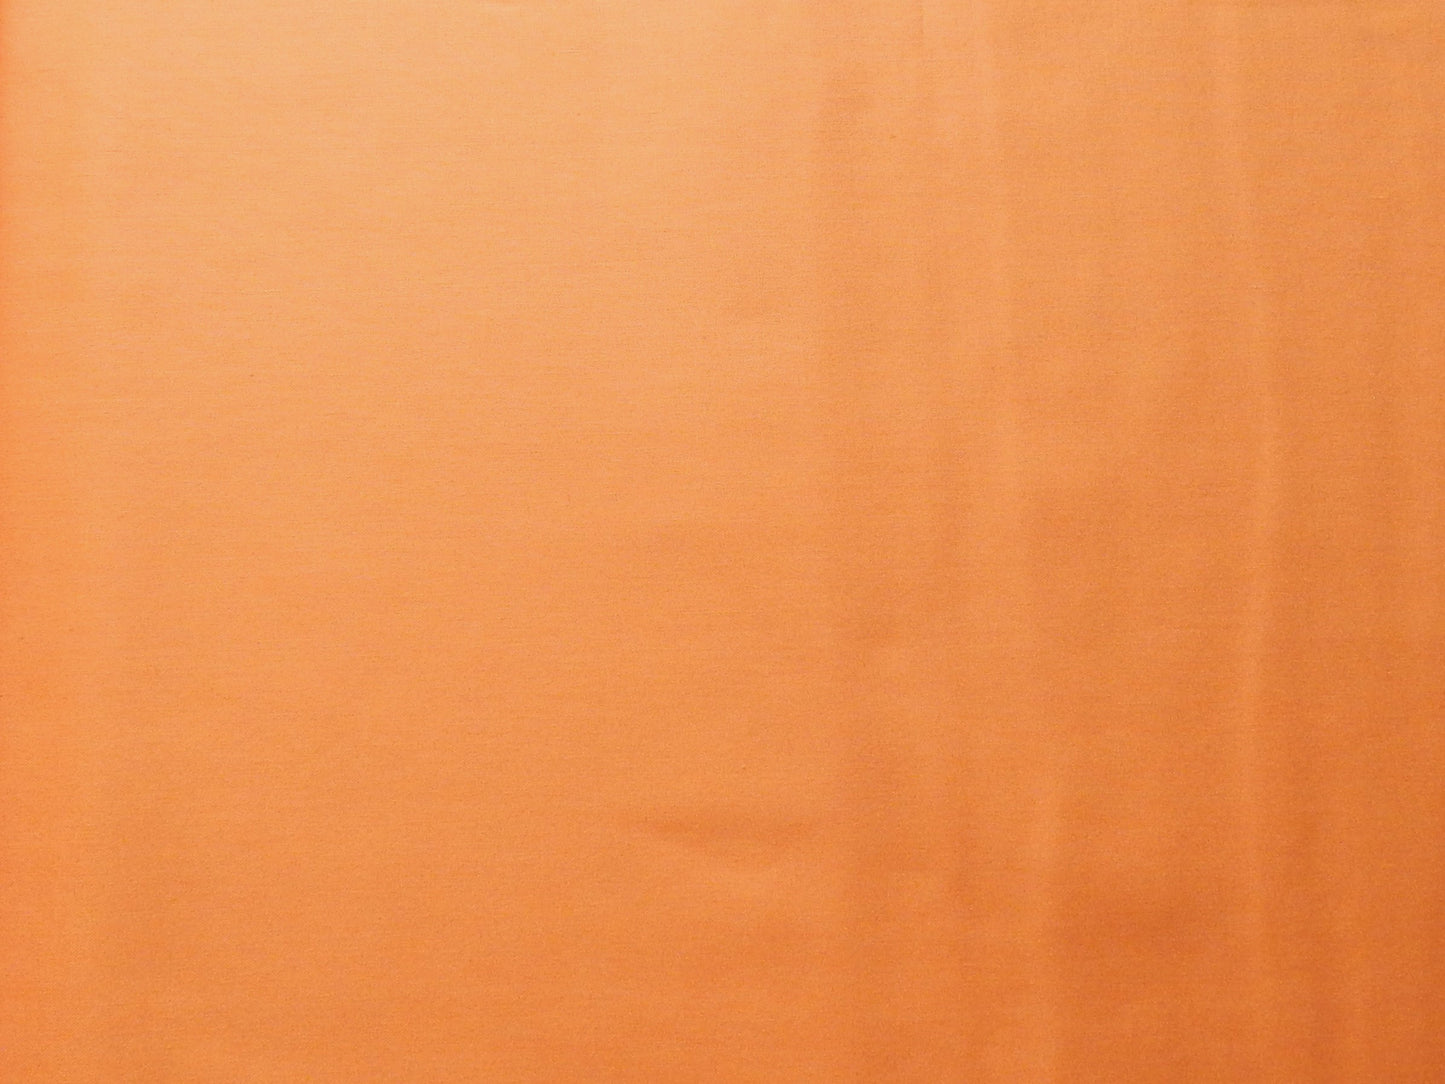 painters palette tangerine orange quilting fabric